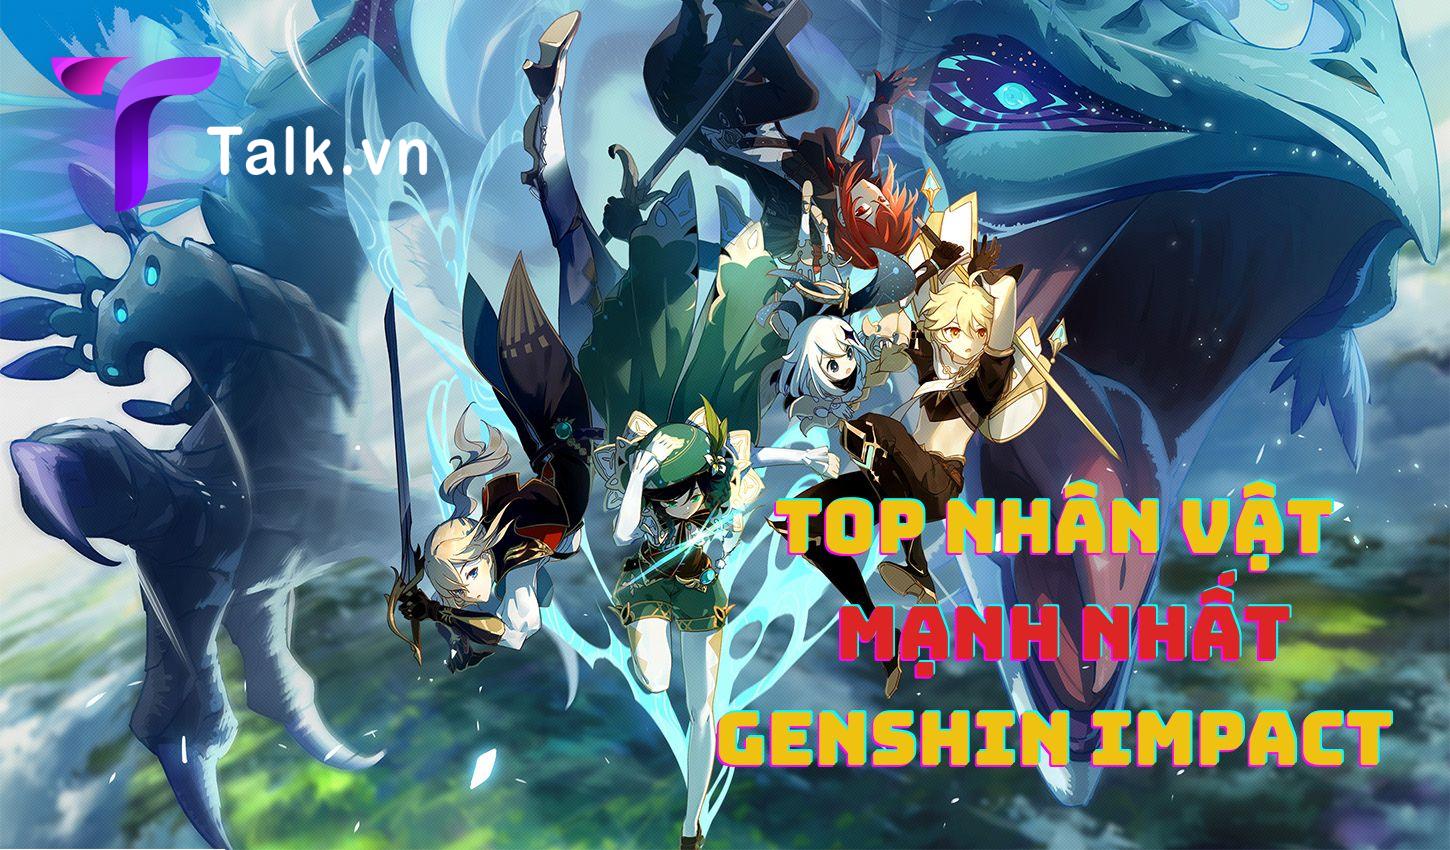 Top nhân vật mạnh nhất Genshin Impact theo cốt truyện game 2022